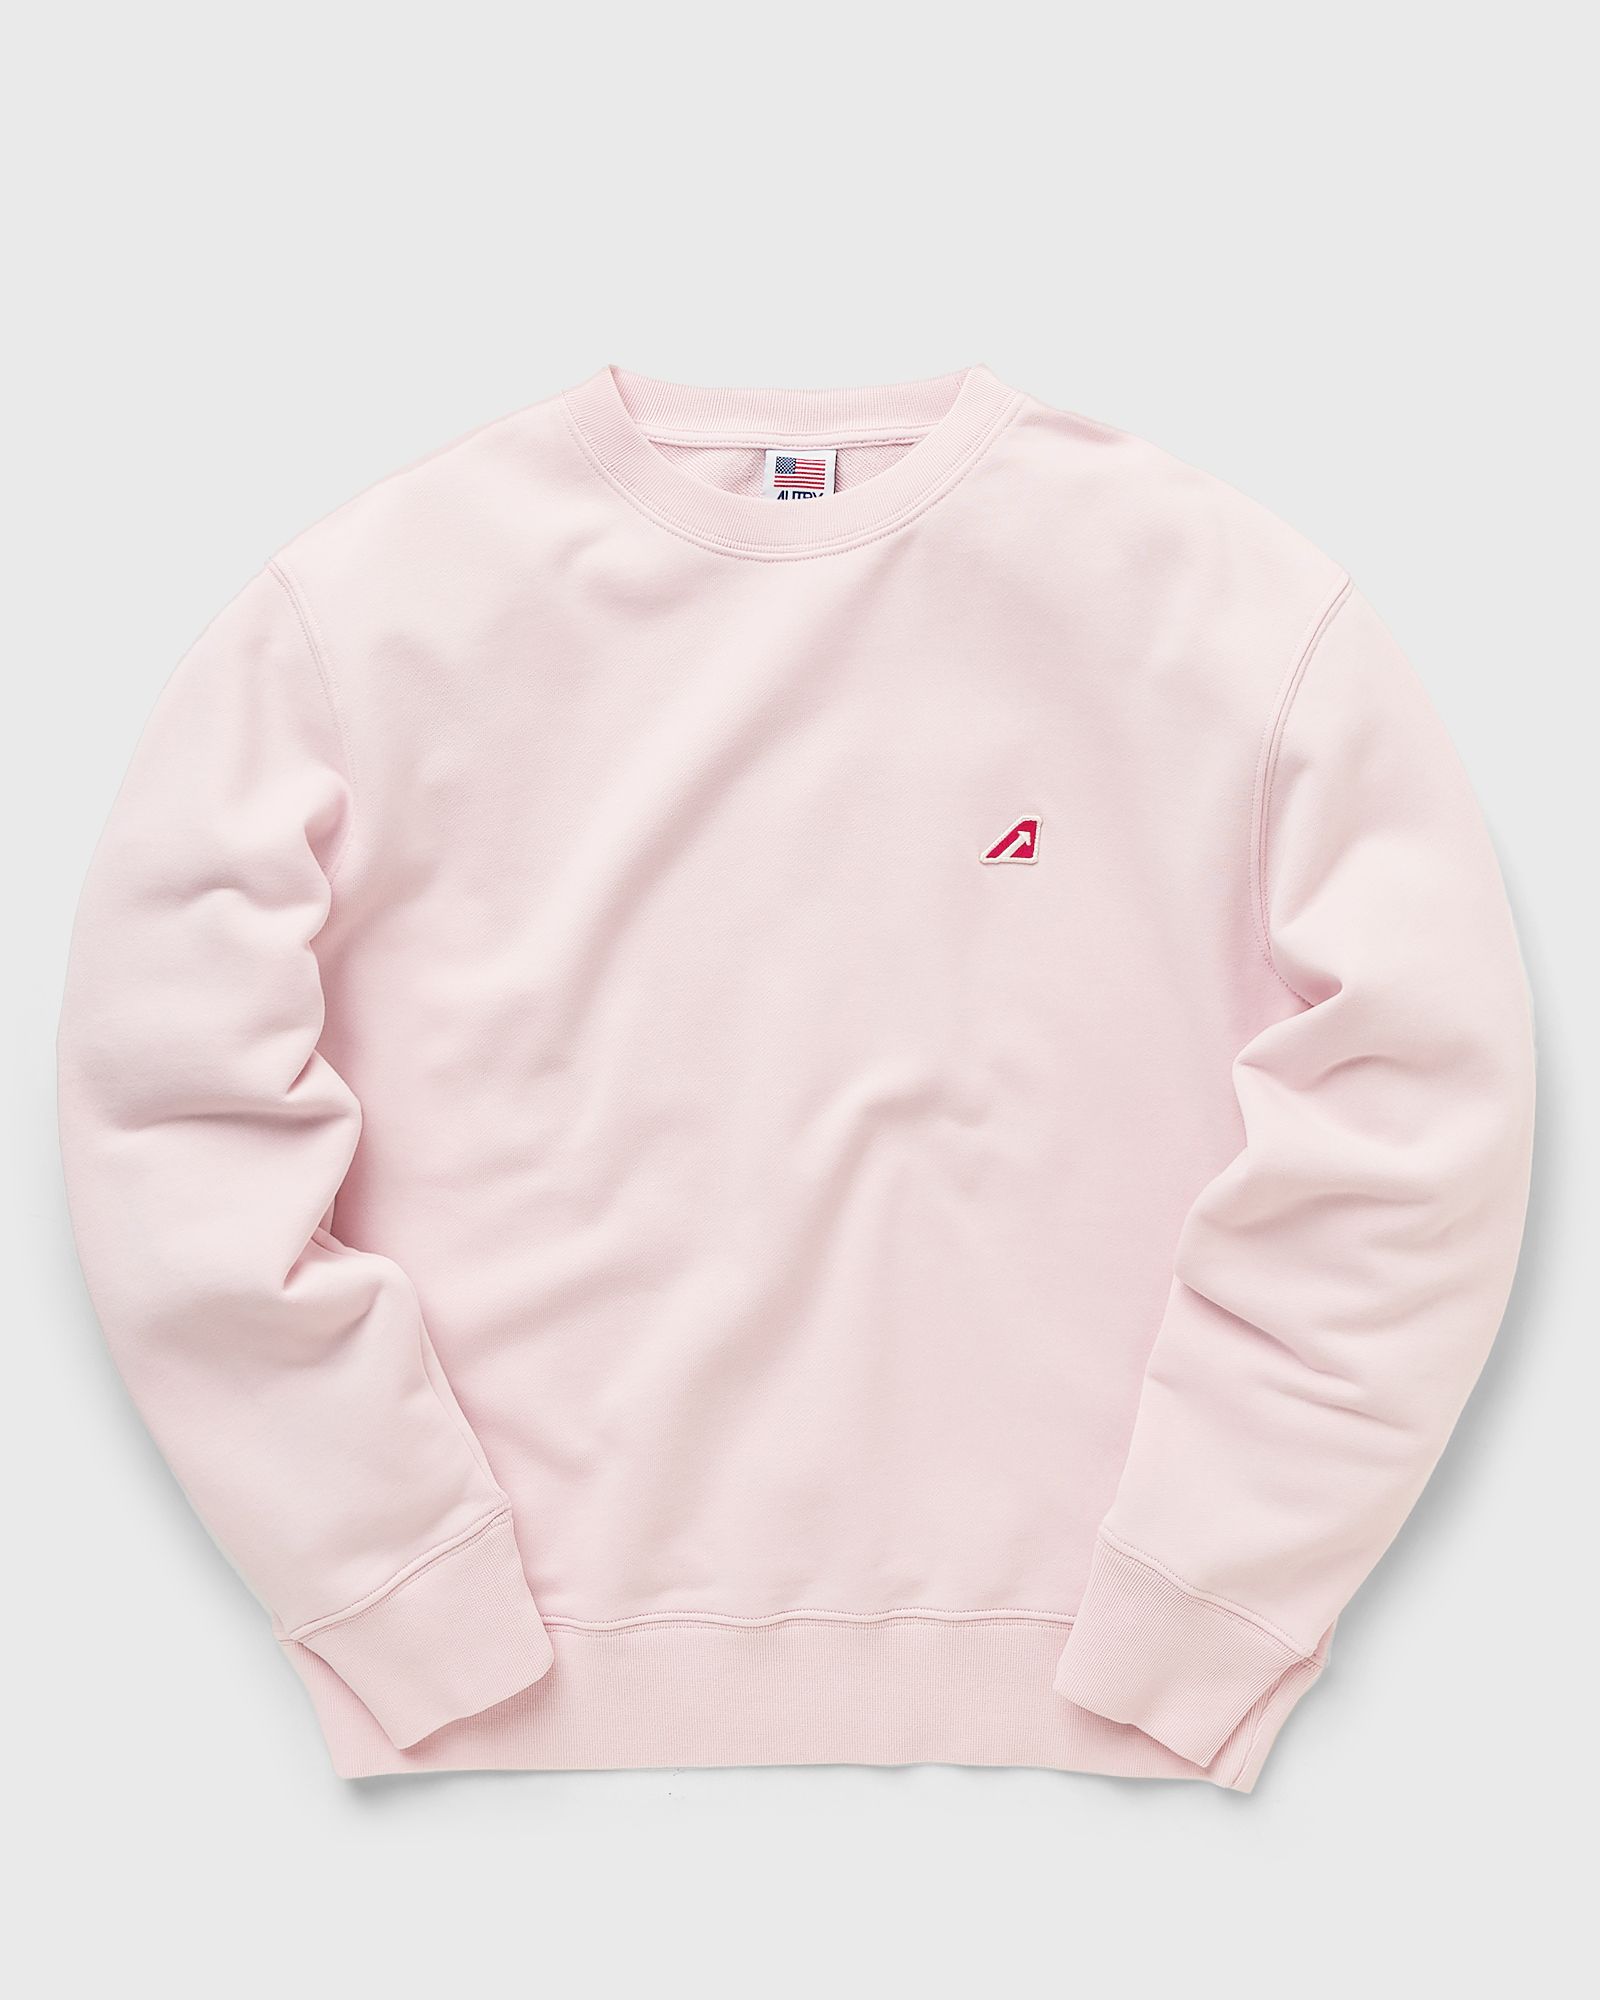 Autry Action Shoes - sweatshirt tennis wom women sweatshirts pink in größe:m